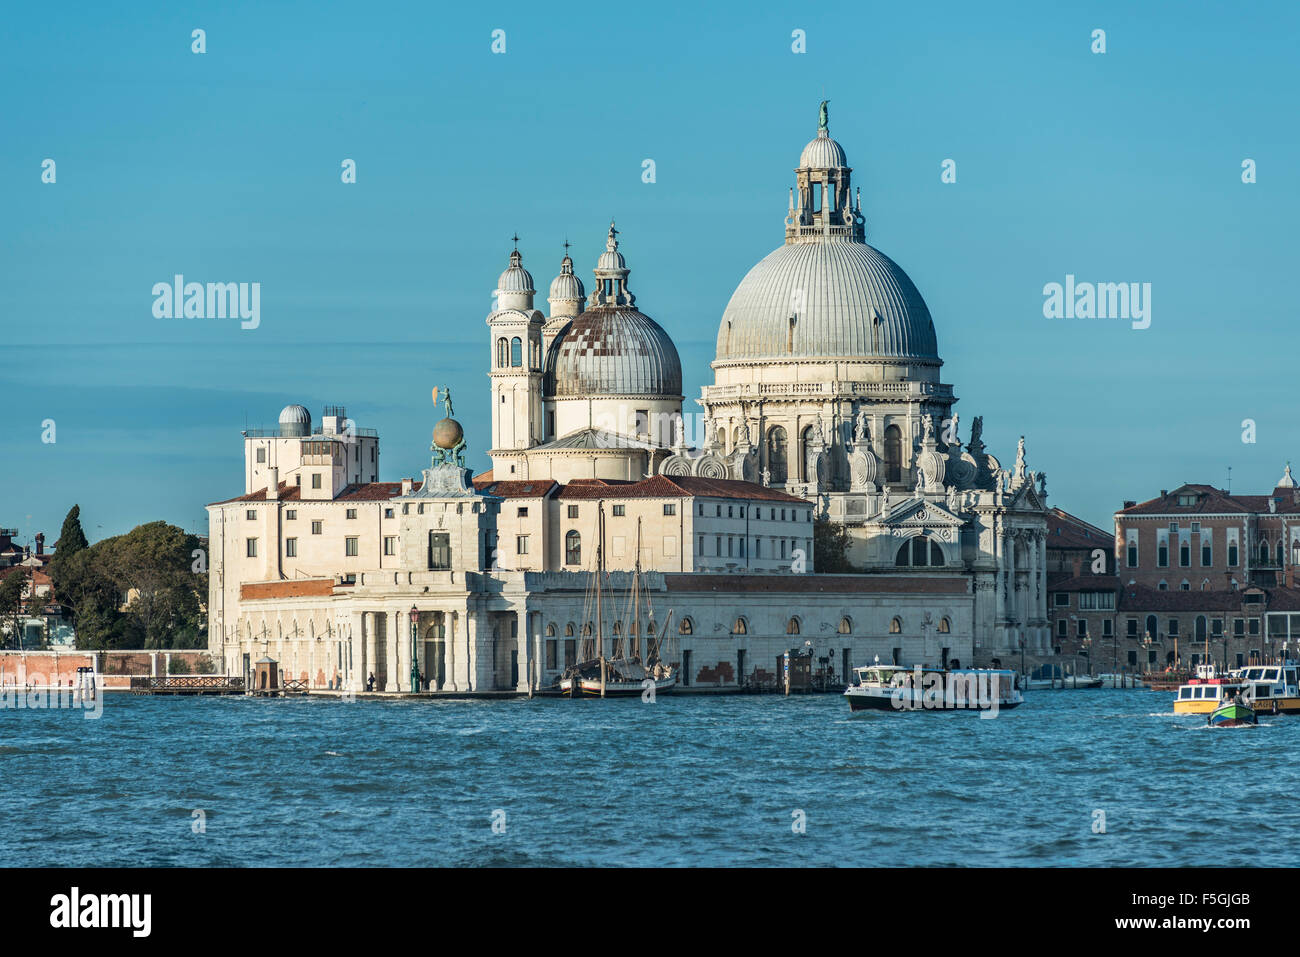 Basilica di Santa Maria della Salute, on Grand Canal, Bacino di San Marco, Cannaregio, Venice, Venezia, Italy Stock Photo